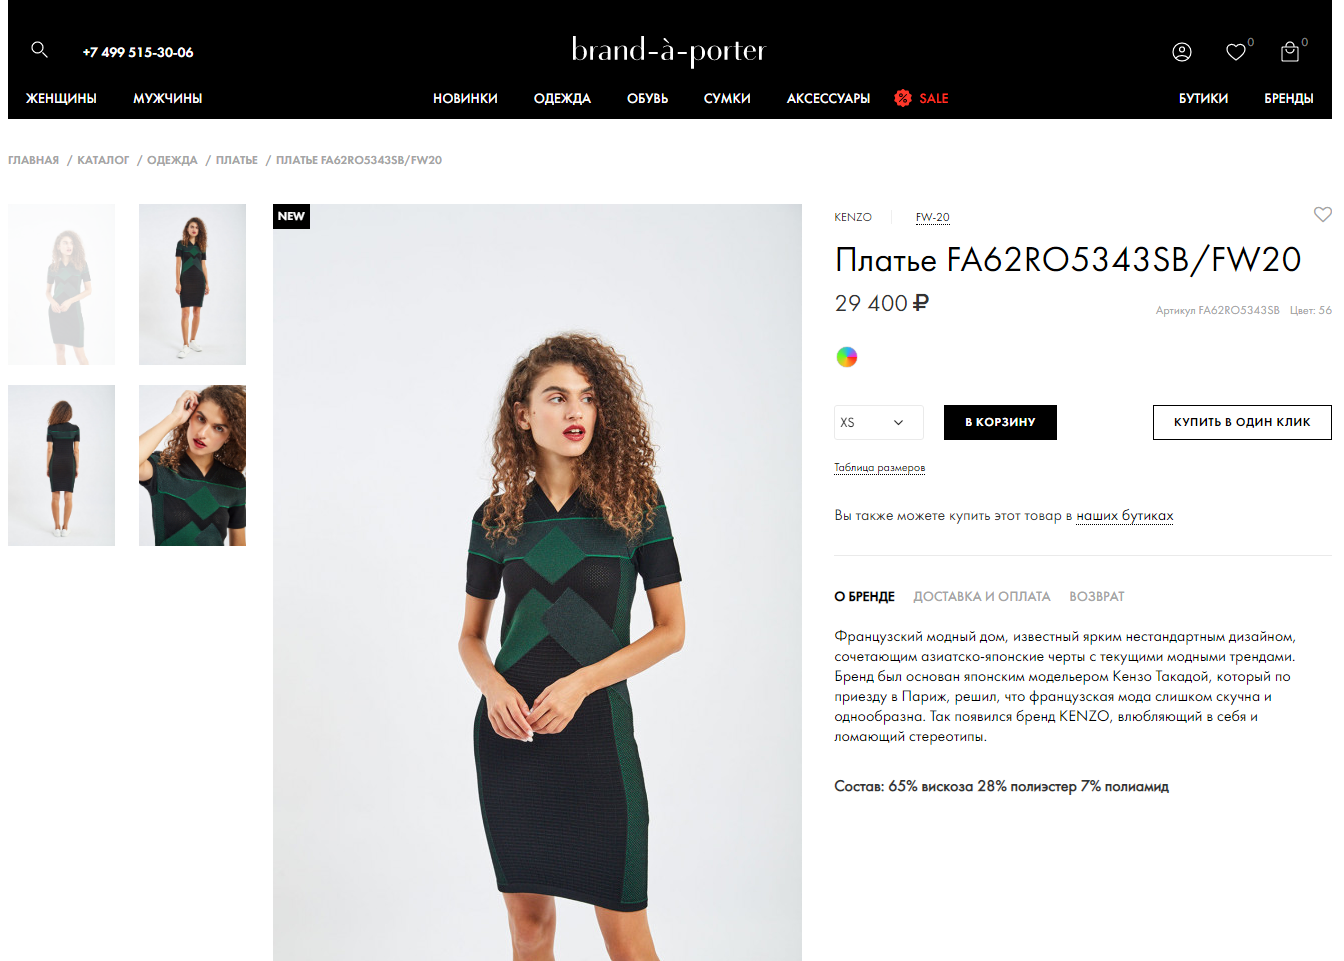 brand-a-porter - интернет-магазин брендовой одежды